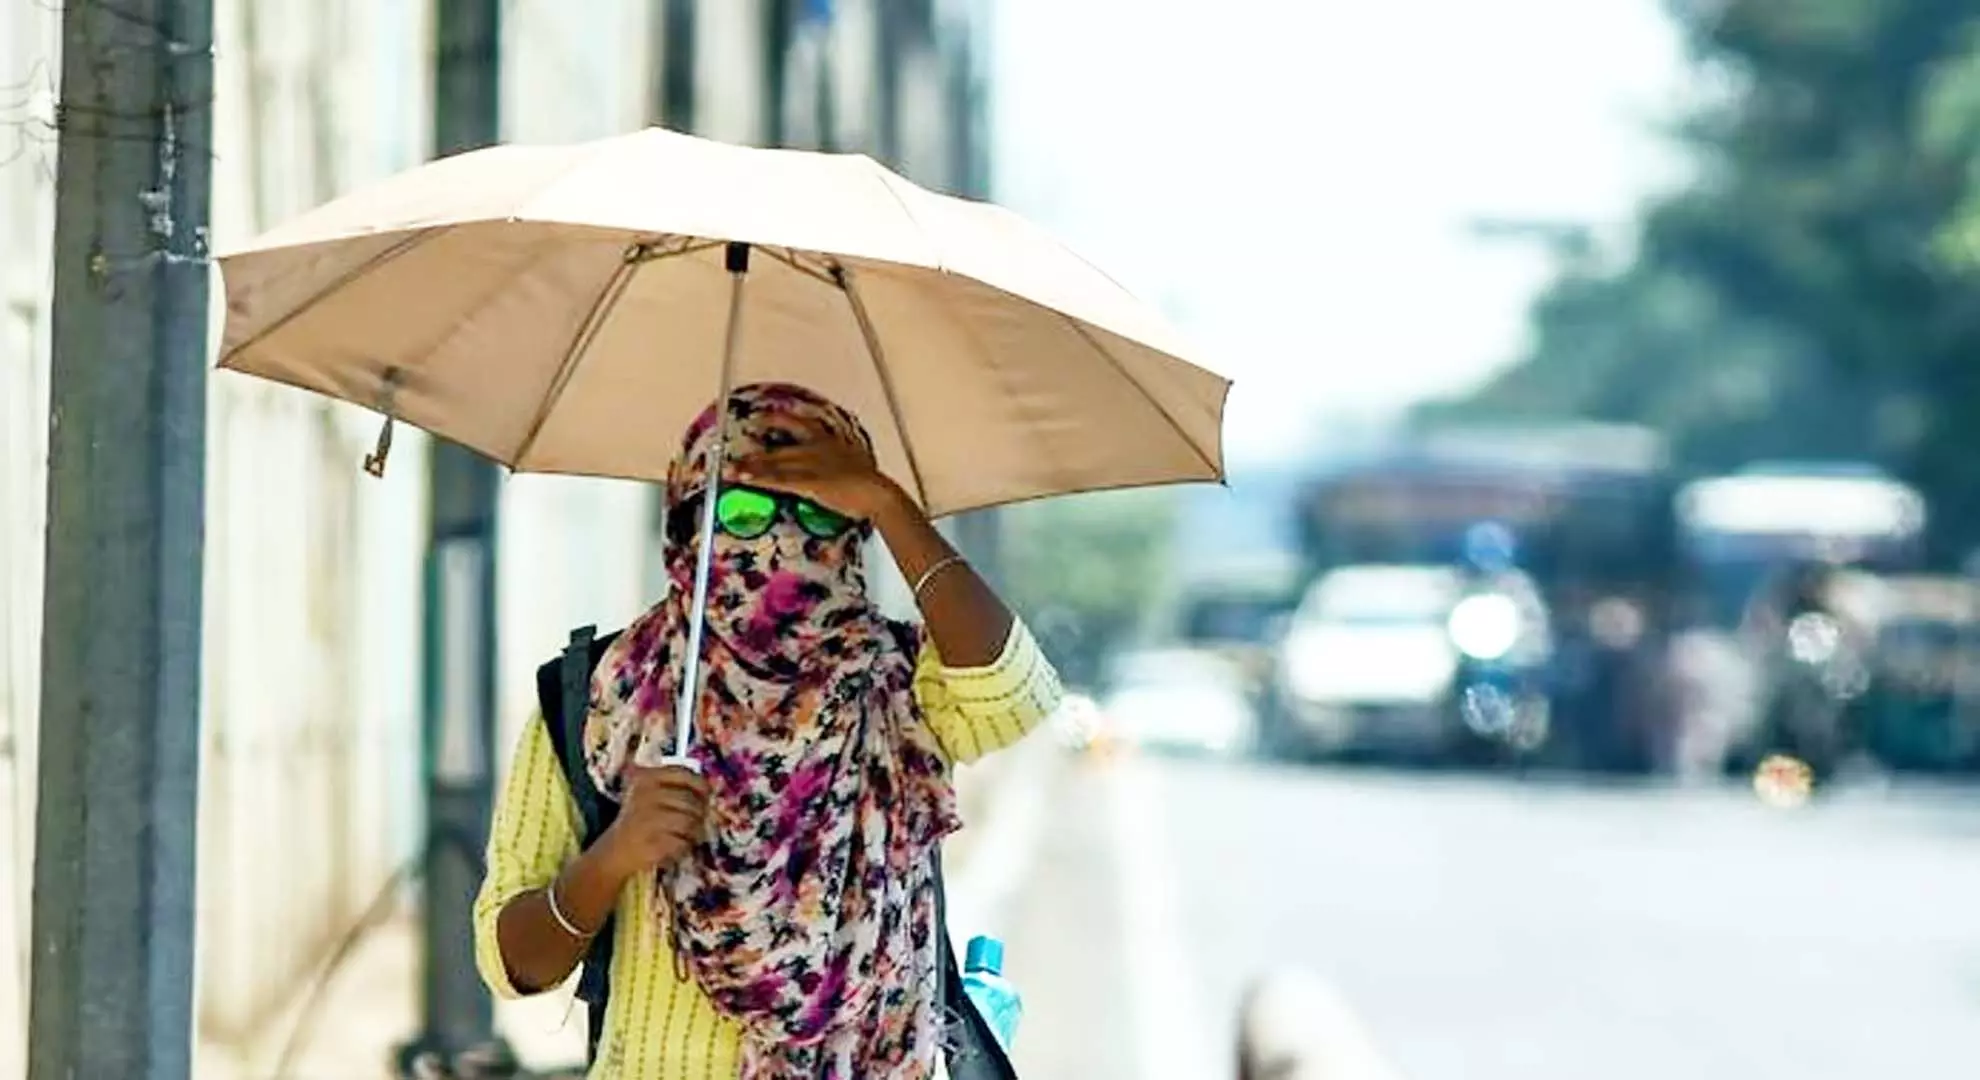 मदुरै में तापमान 41 डिग्री सेल्सियस पर, विशेषज्ञ सावधानी बरतने की सलाह देते हैं